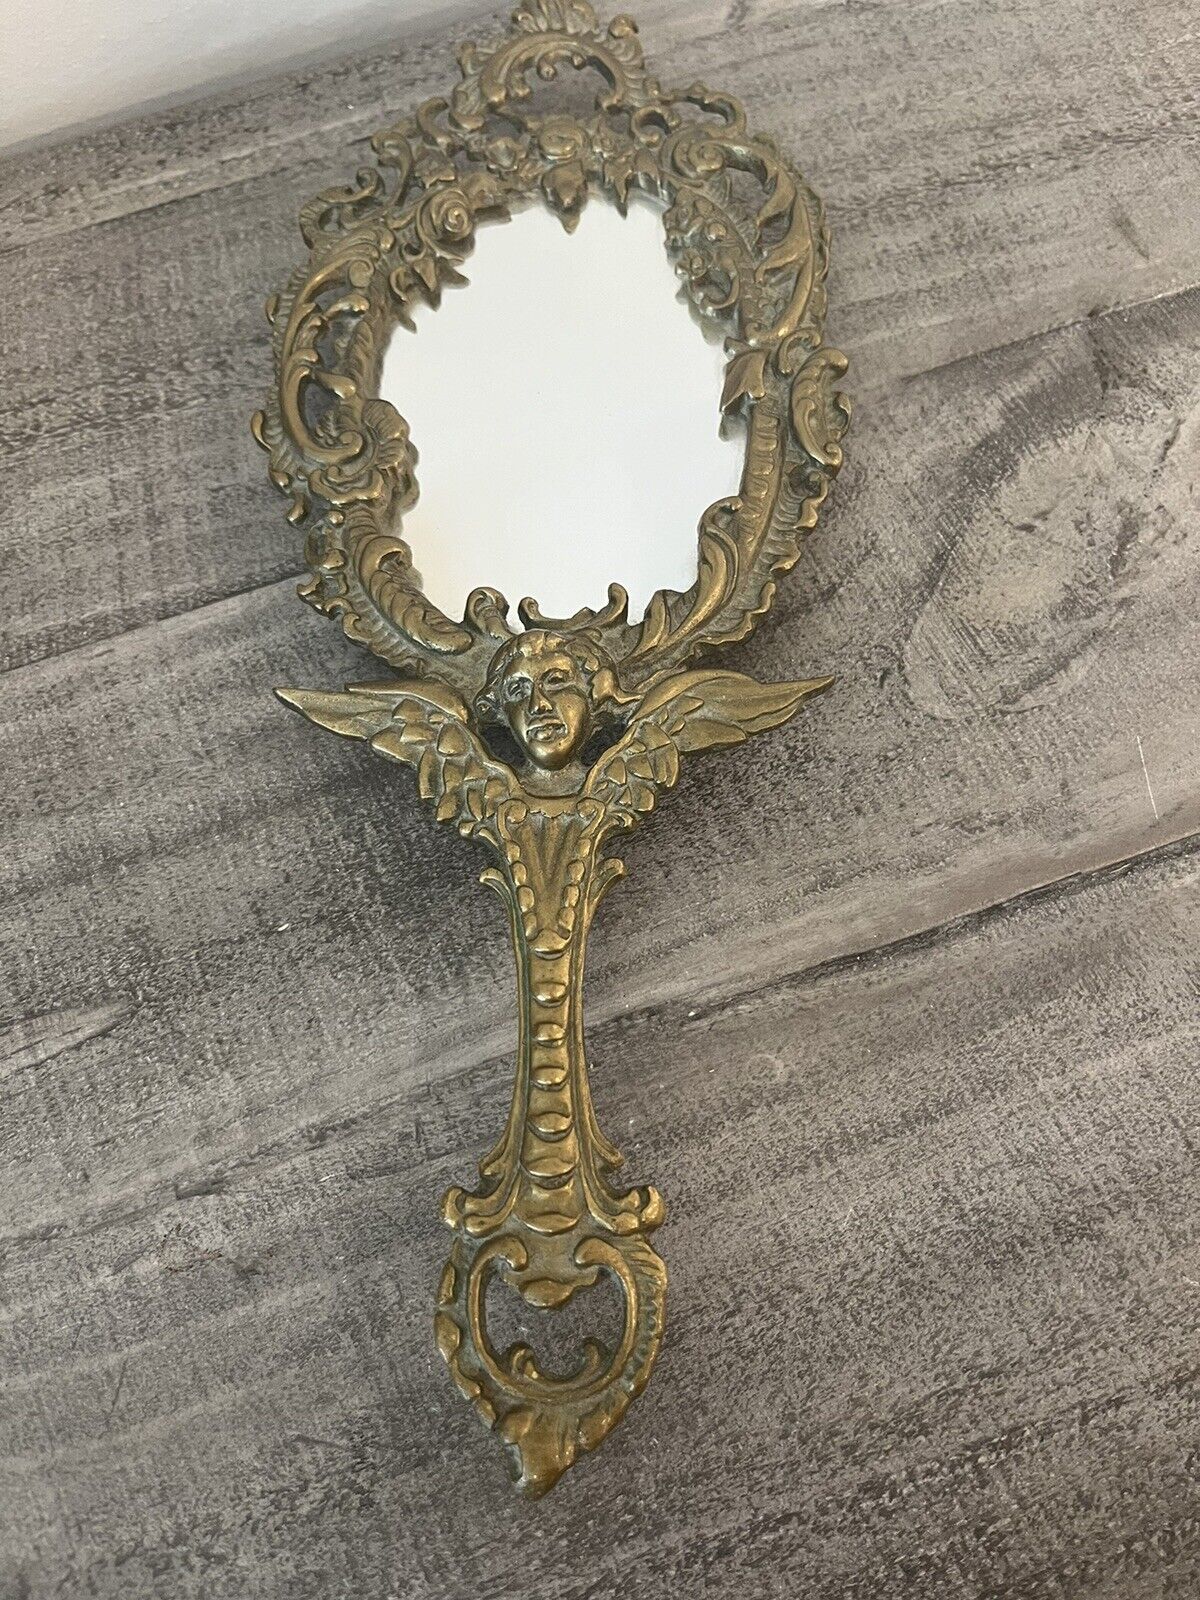 Vintage Rare Solid Brass Ornate Art Nouveau Hand Mirror Angel/Cherub